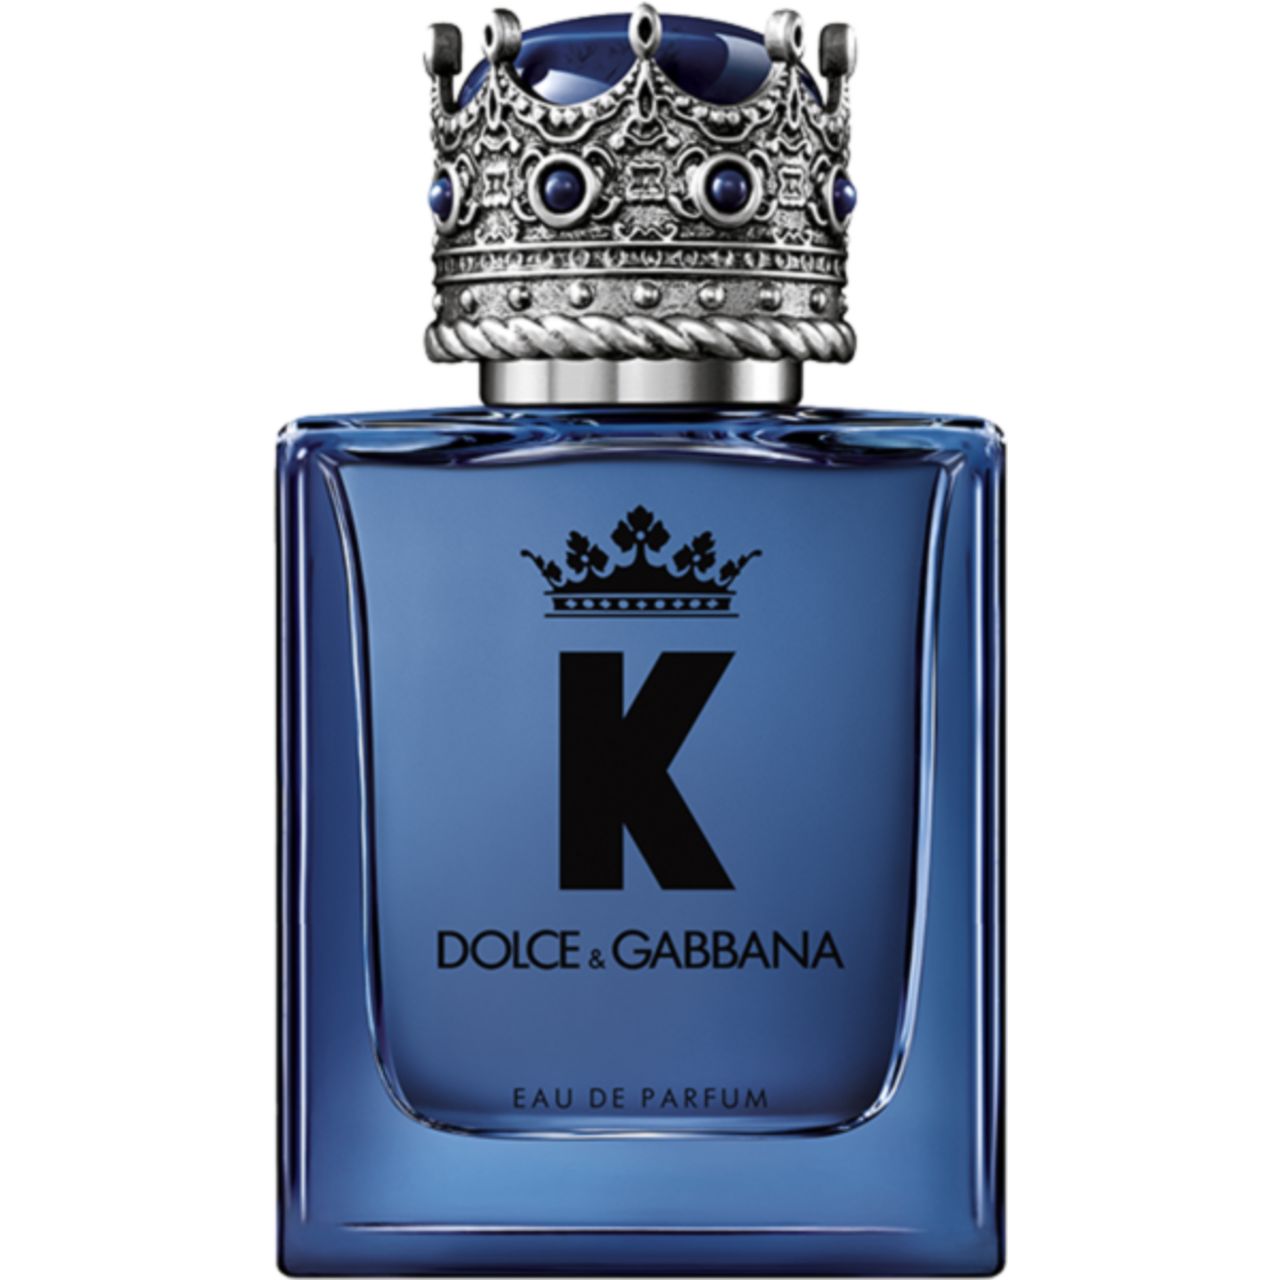 Dolce & Gabbana, K by Dolce&Gabbana E.d.P. Nat. Spray